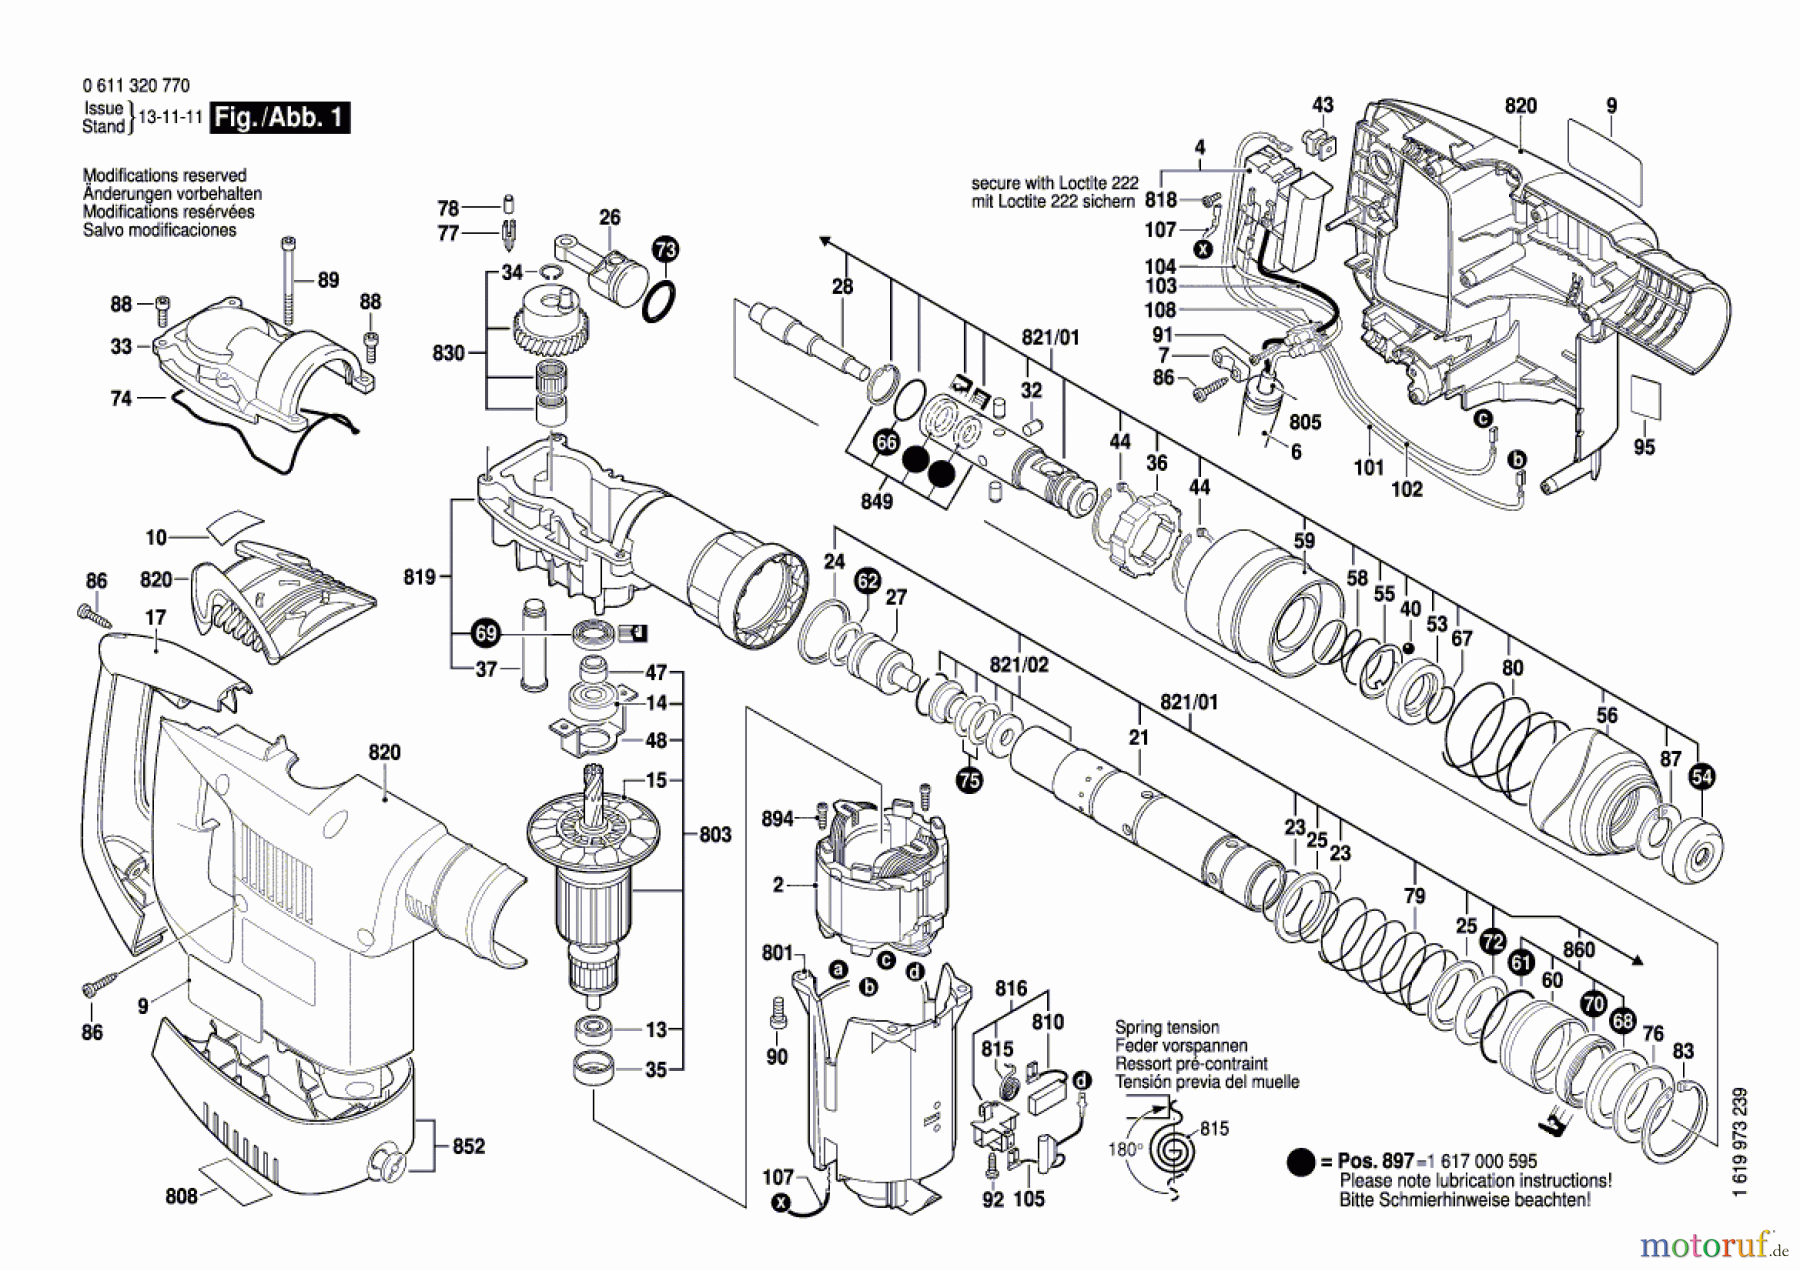  Bosch Werkzeug Schlaghammer 431 C Seite 1